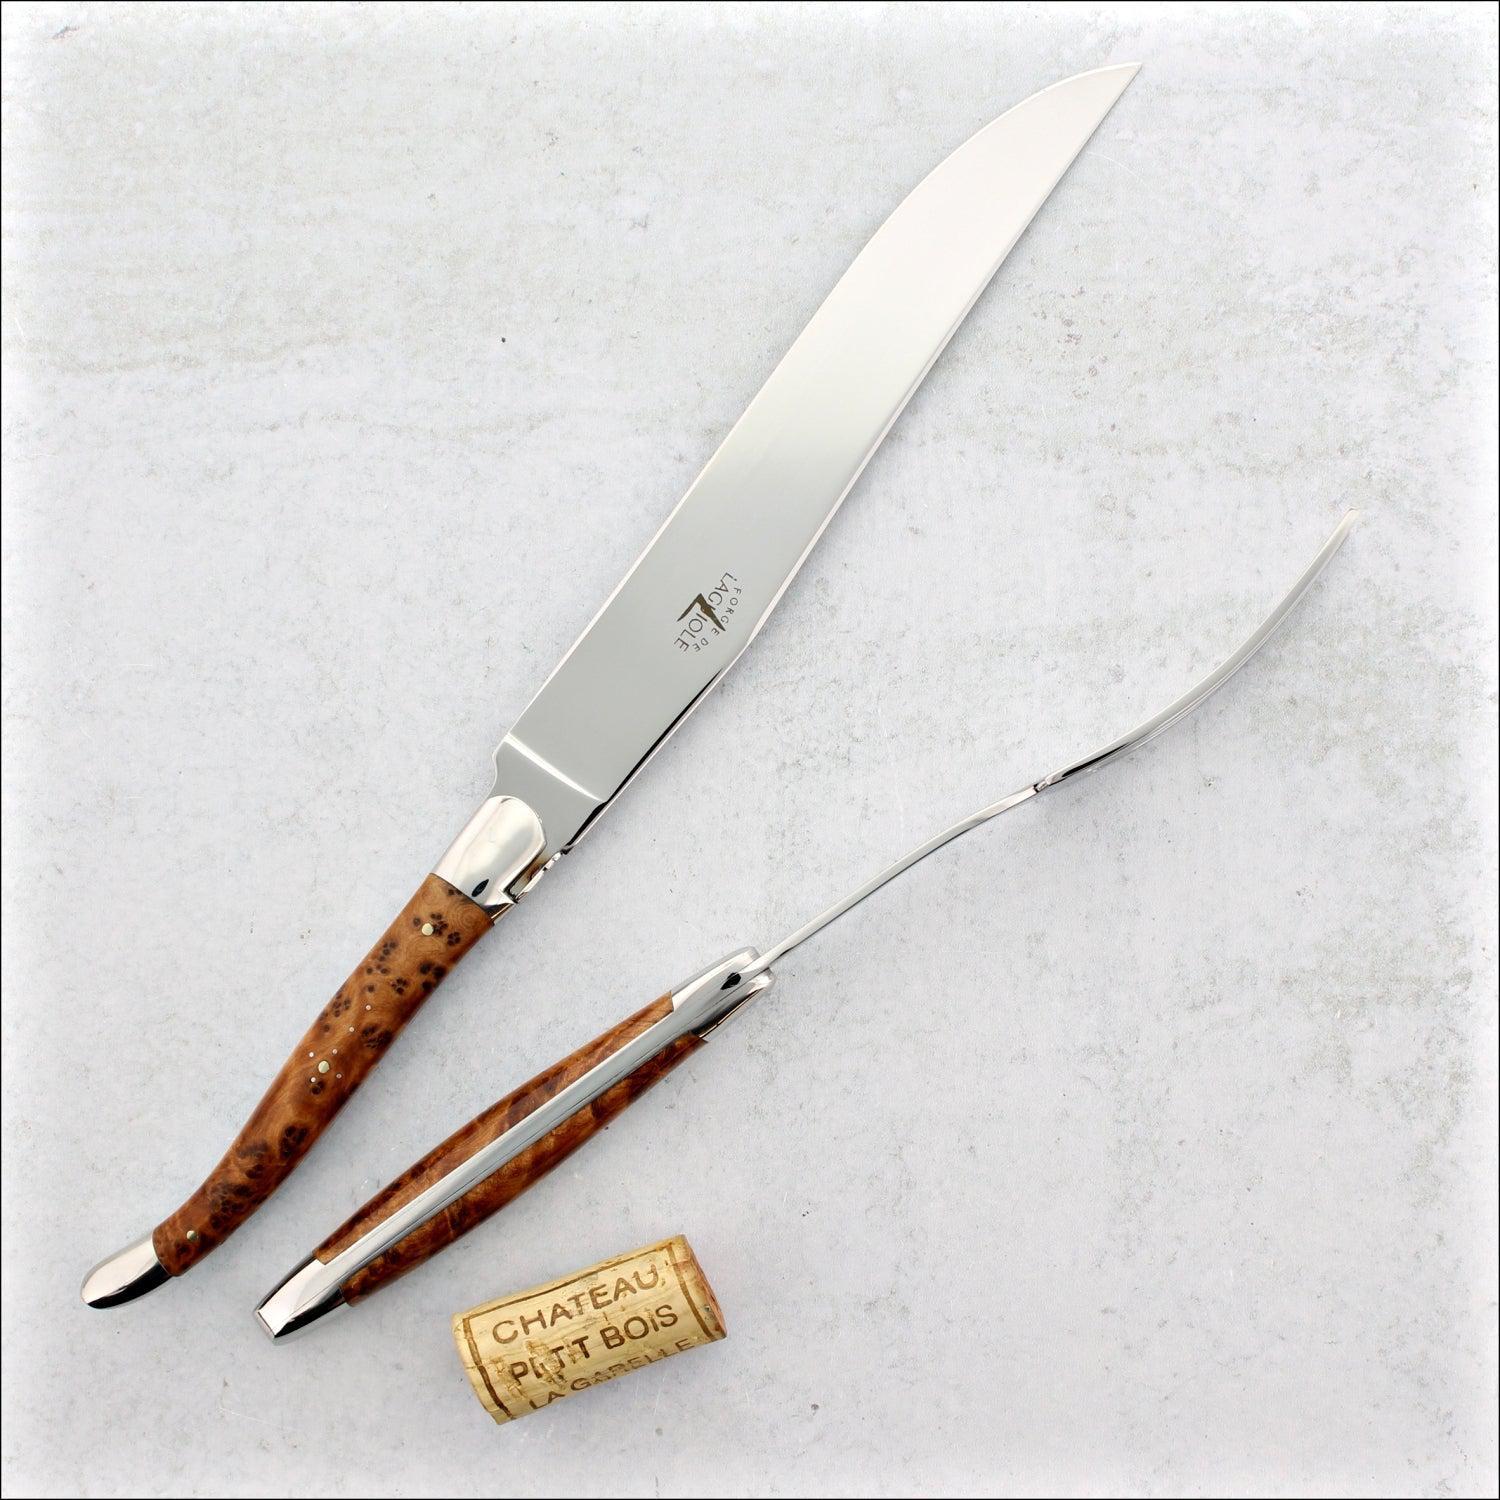 Forge de Laguiole - Thuya Handle Table Knives - Set of 6 - Thuya